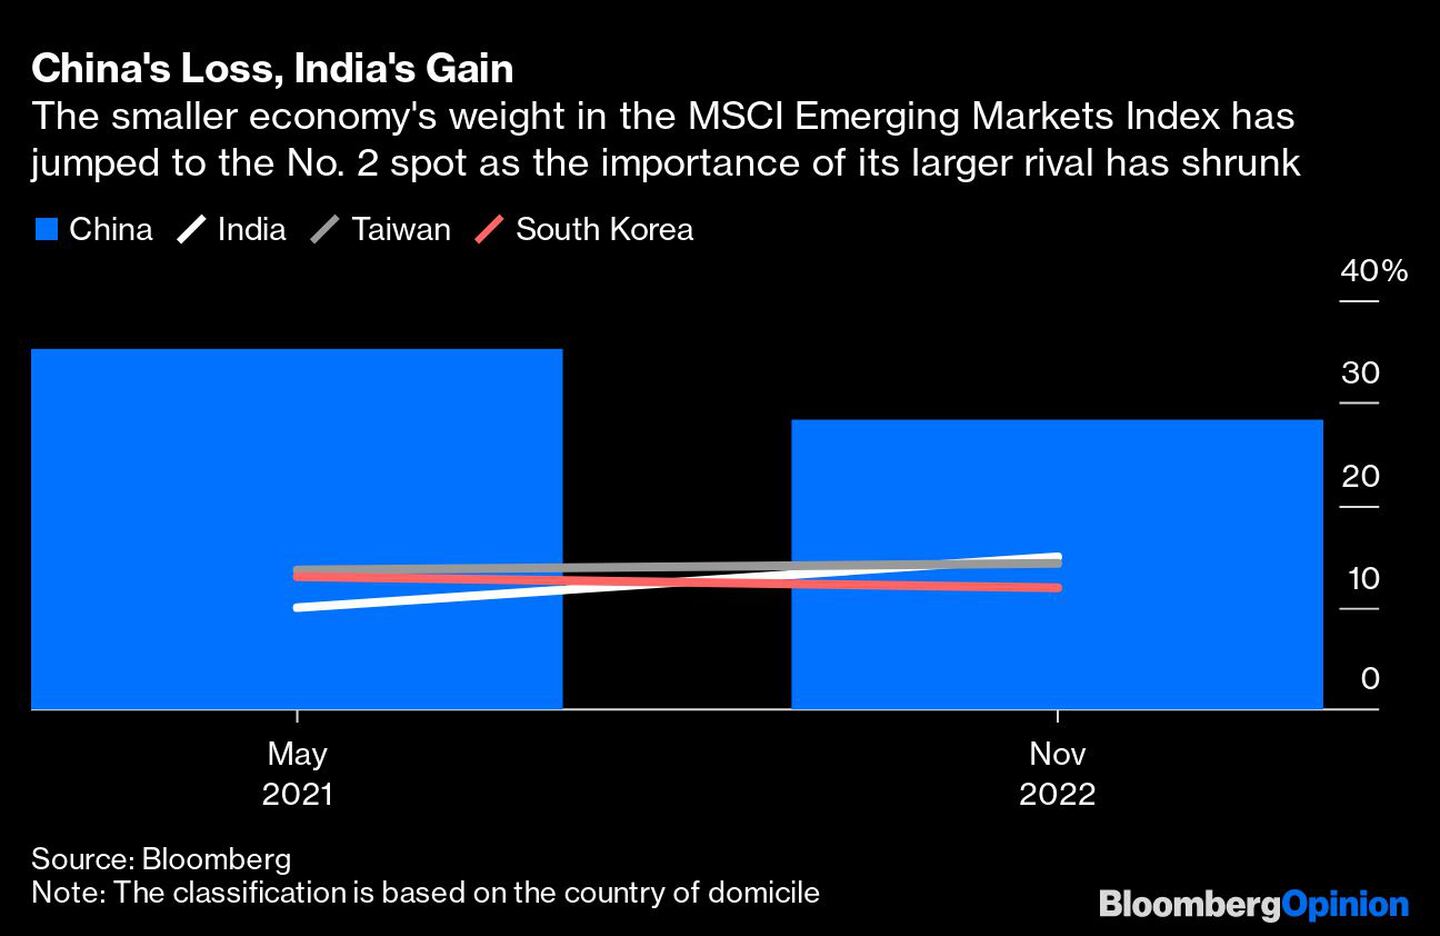 El peso de la economía más pequeña en el Índice MSCI de Mercados Emergentes ha saltado al puesto nº 2, a medida que la importancia de su mayor rival se ha reducido.dfd